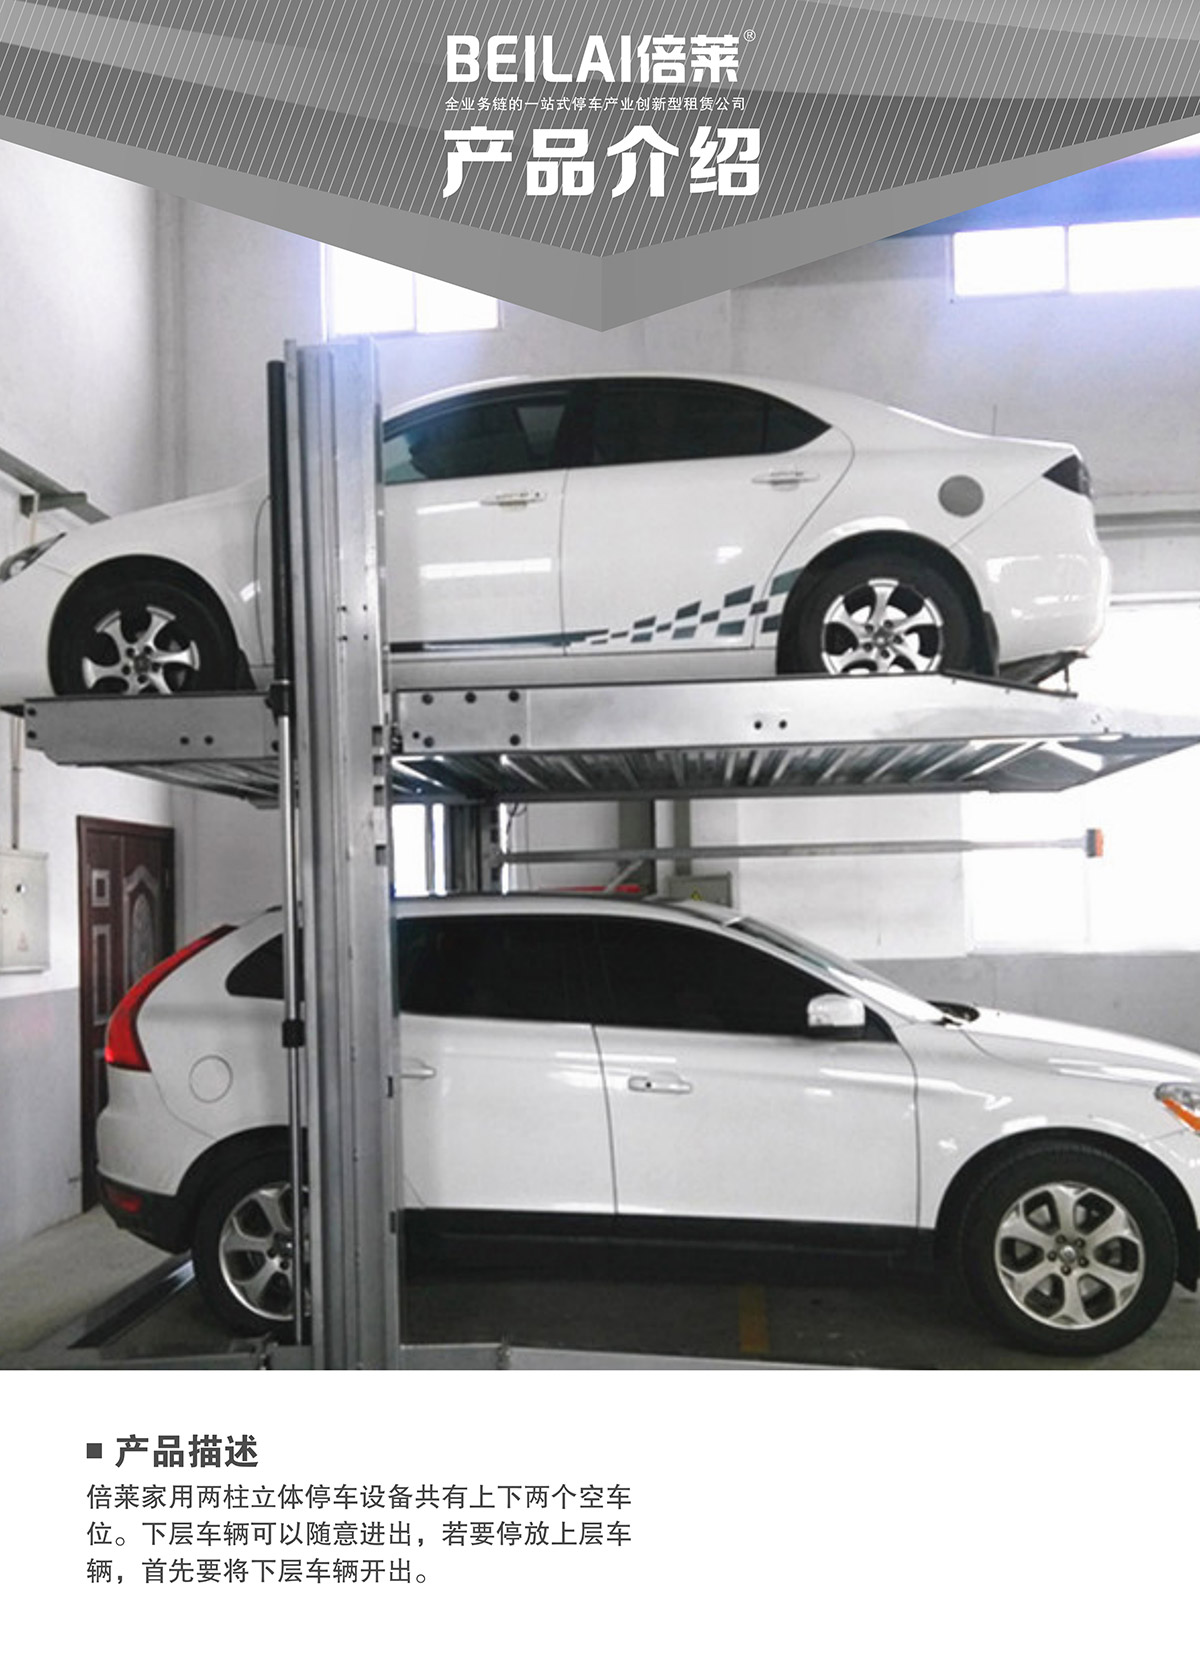 立体车位租赁两柱简易升降机械停车设备产品介绍.jpg